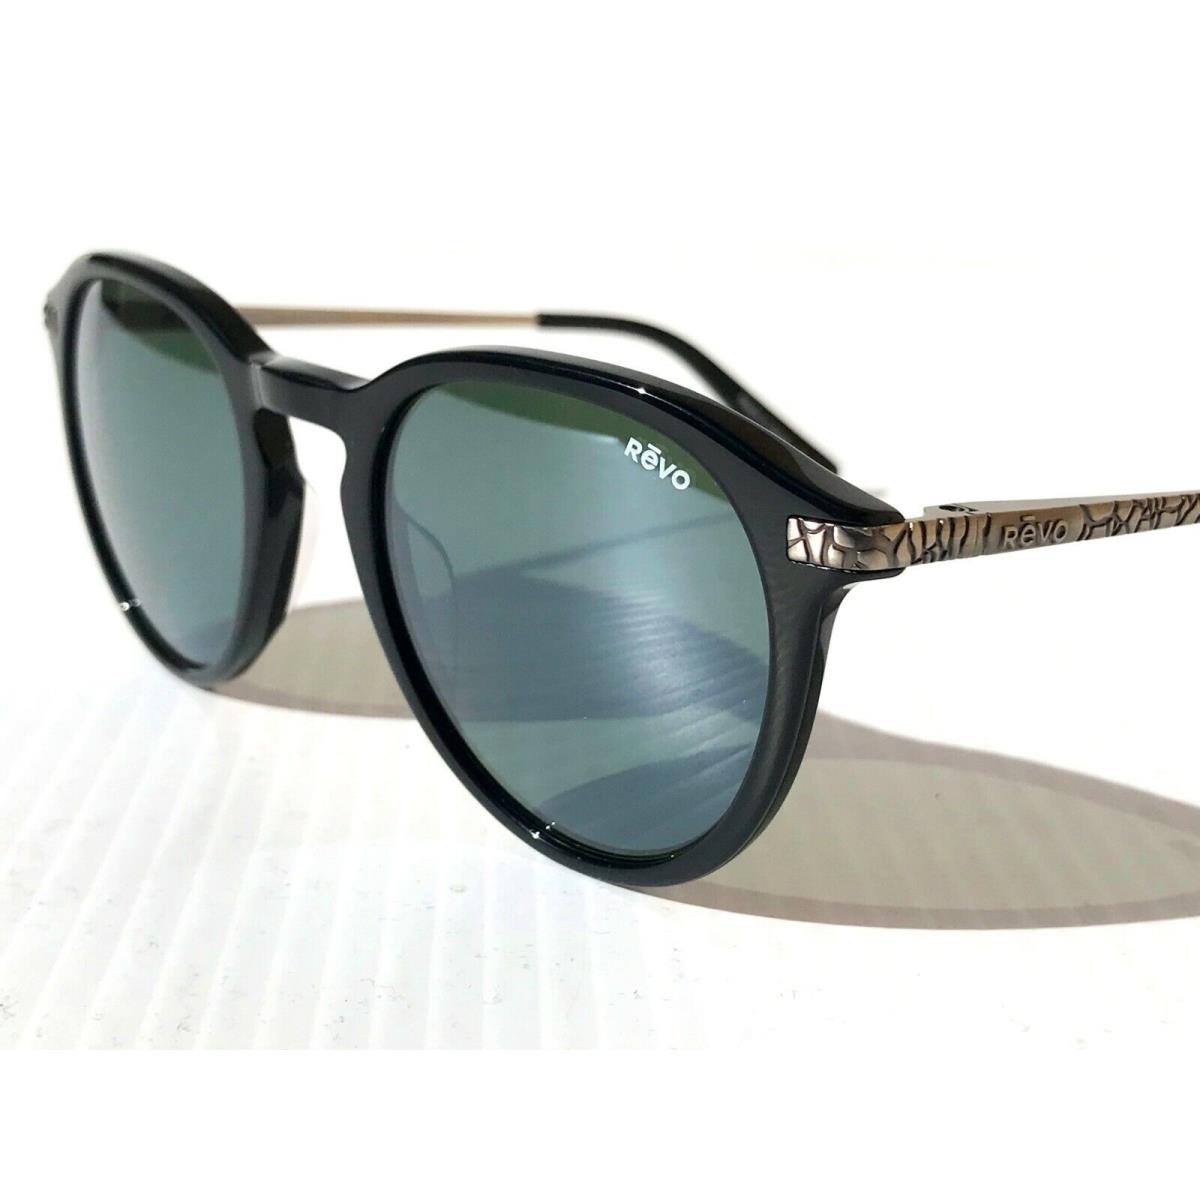 Revo sunglasses PYTHON - Black Frame, Gray Lens 7